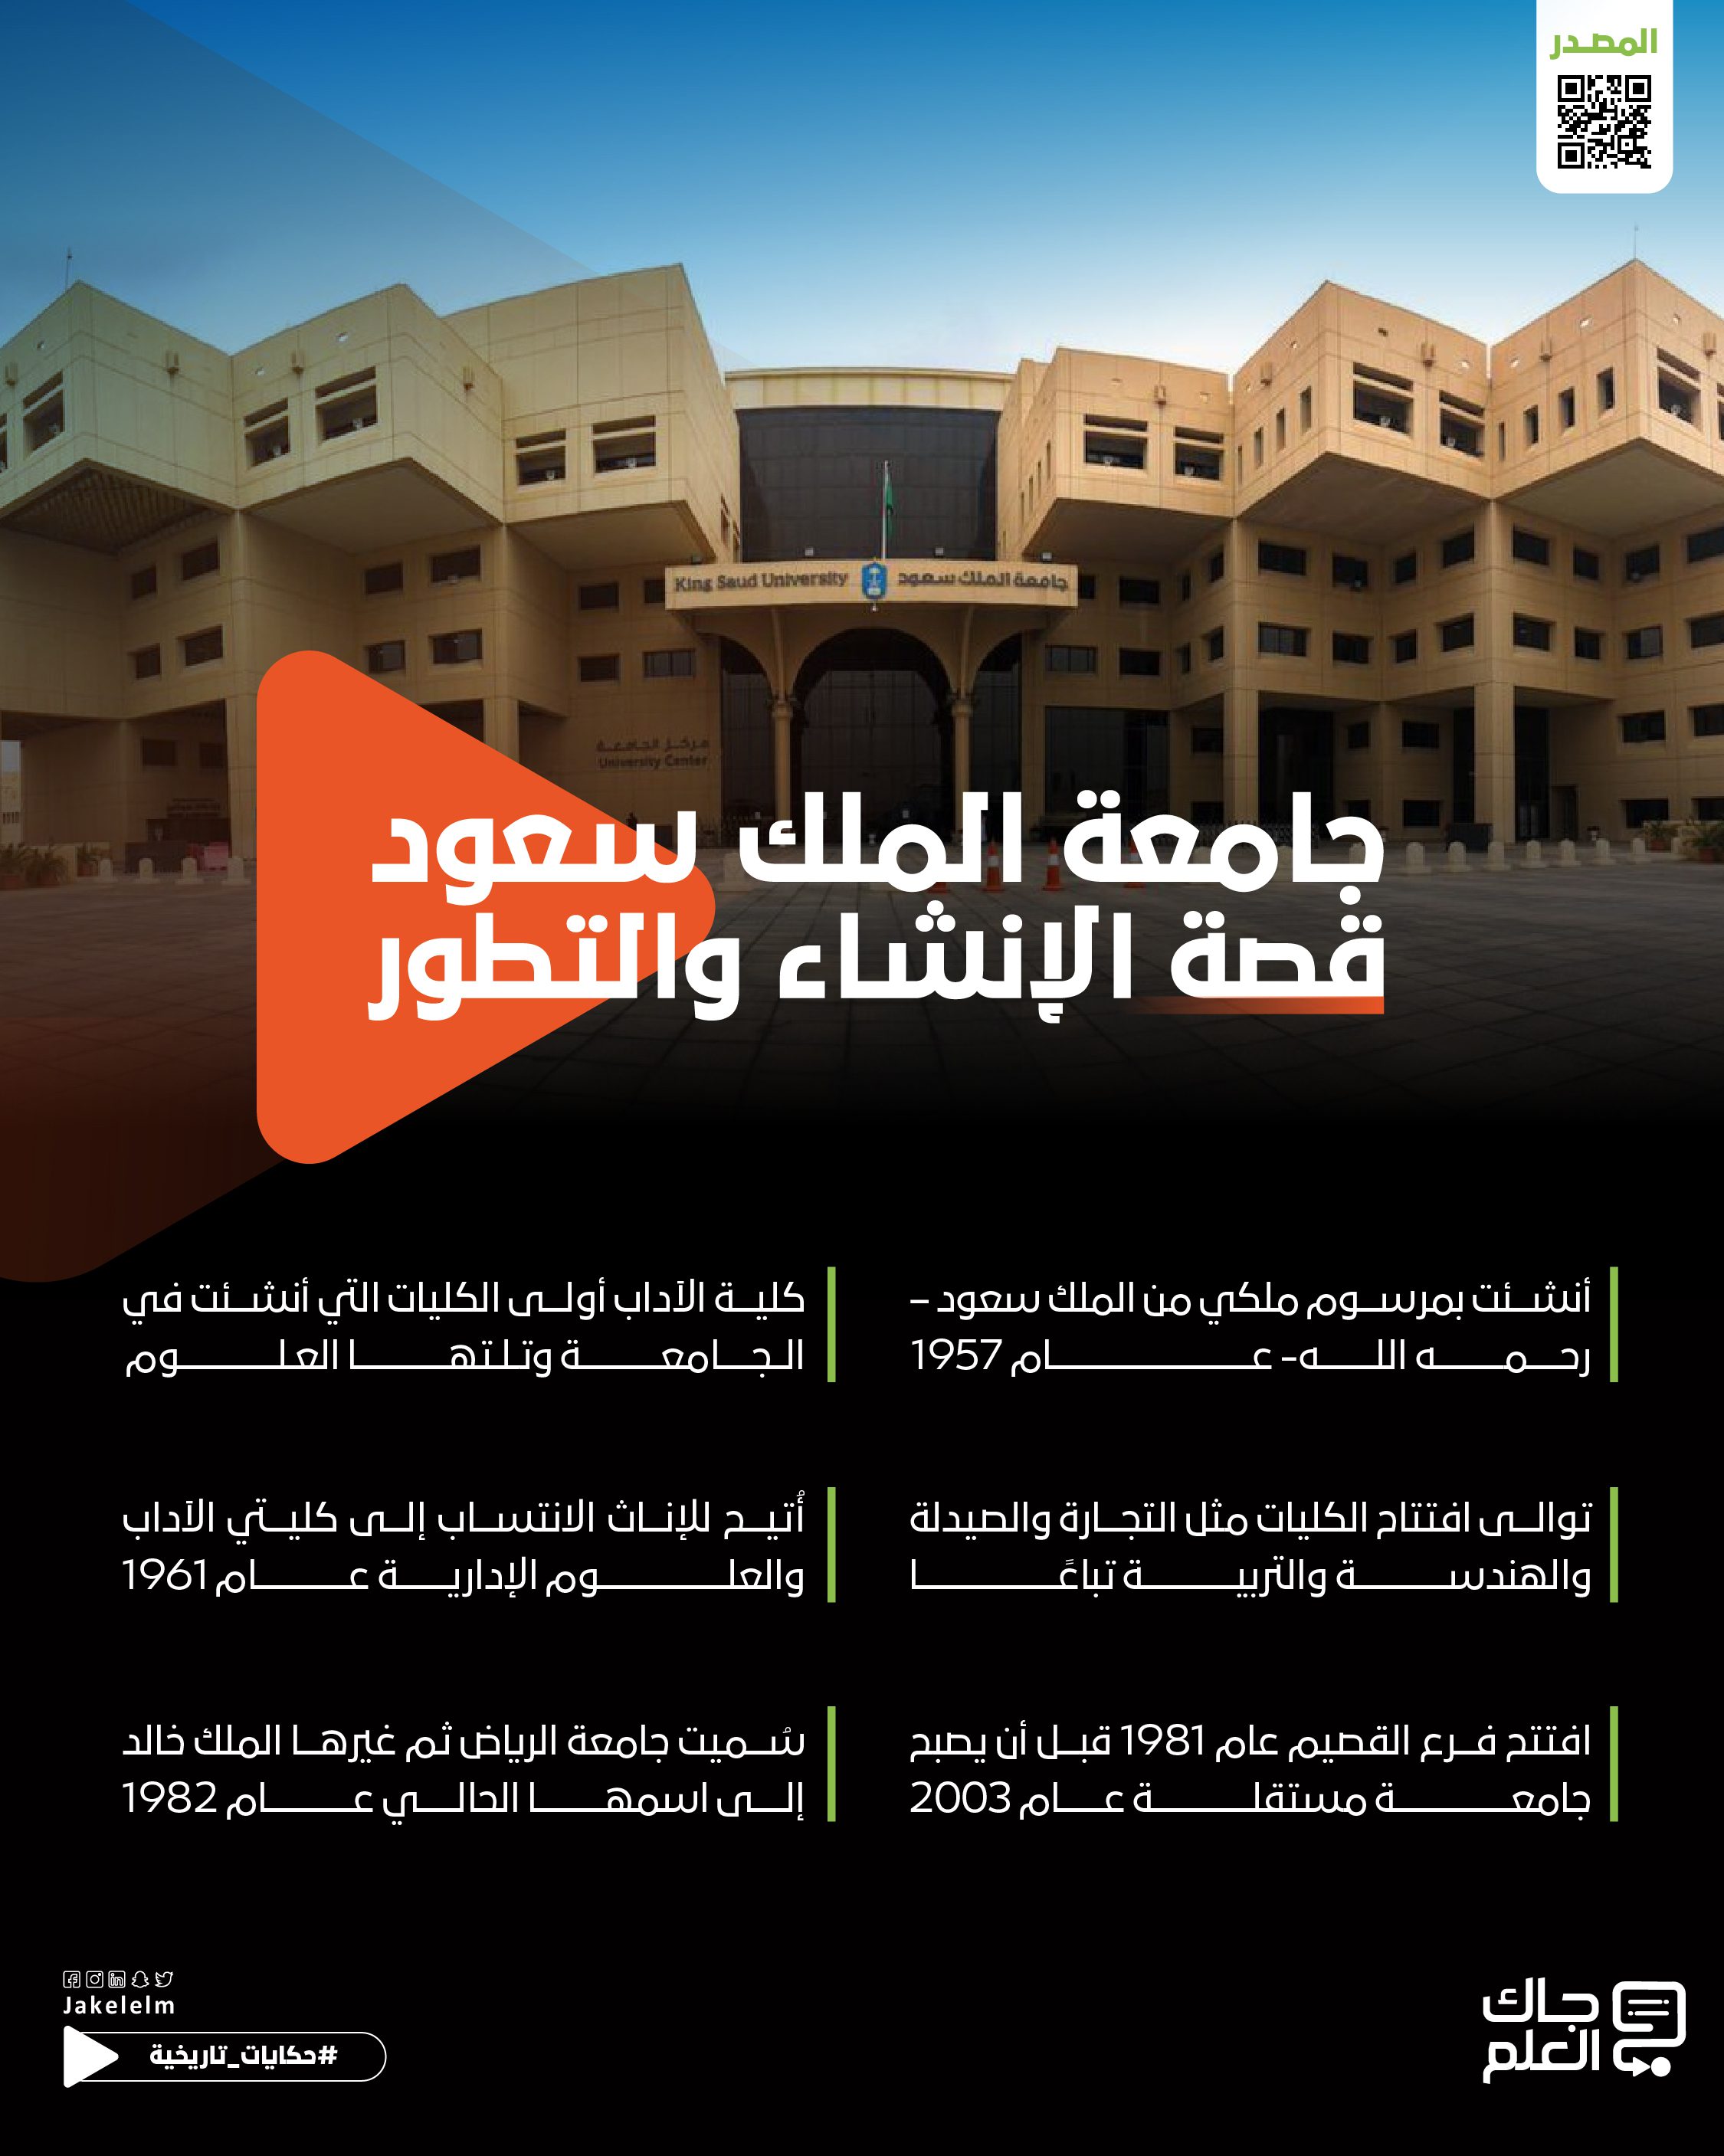 تاريخ تأسيس وتطور جامعة الملك سعود